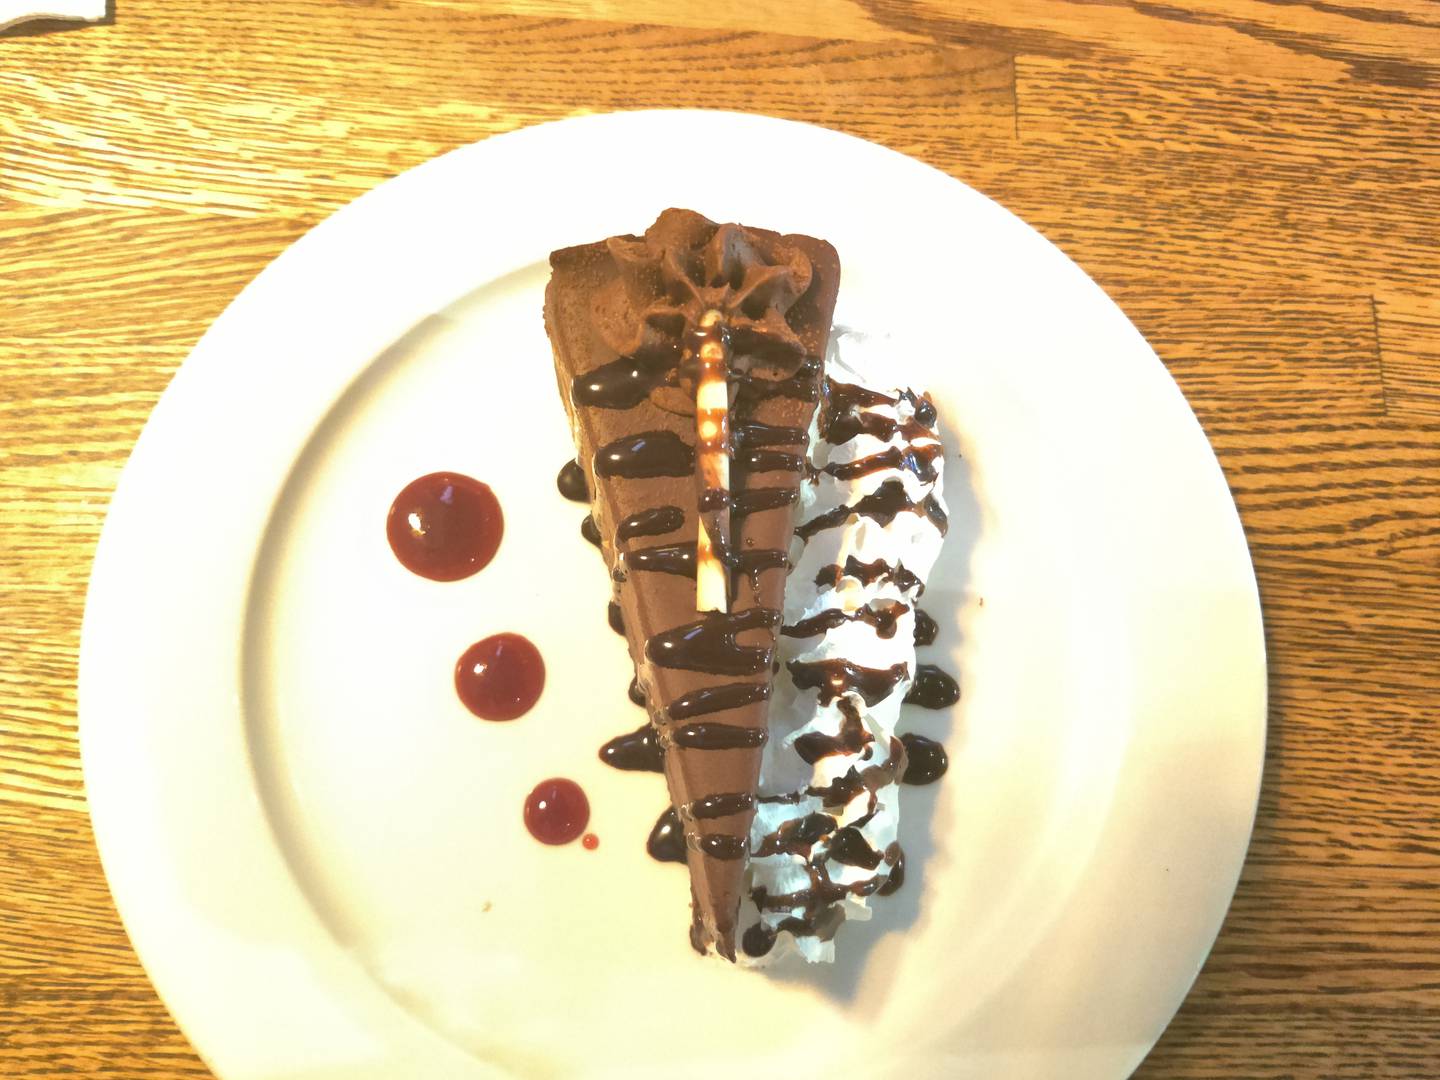 The Death By Chocolate dessert at Walnut SpeakEasy in Elgin.